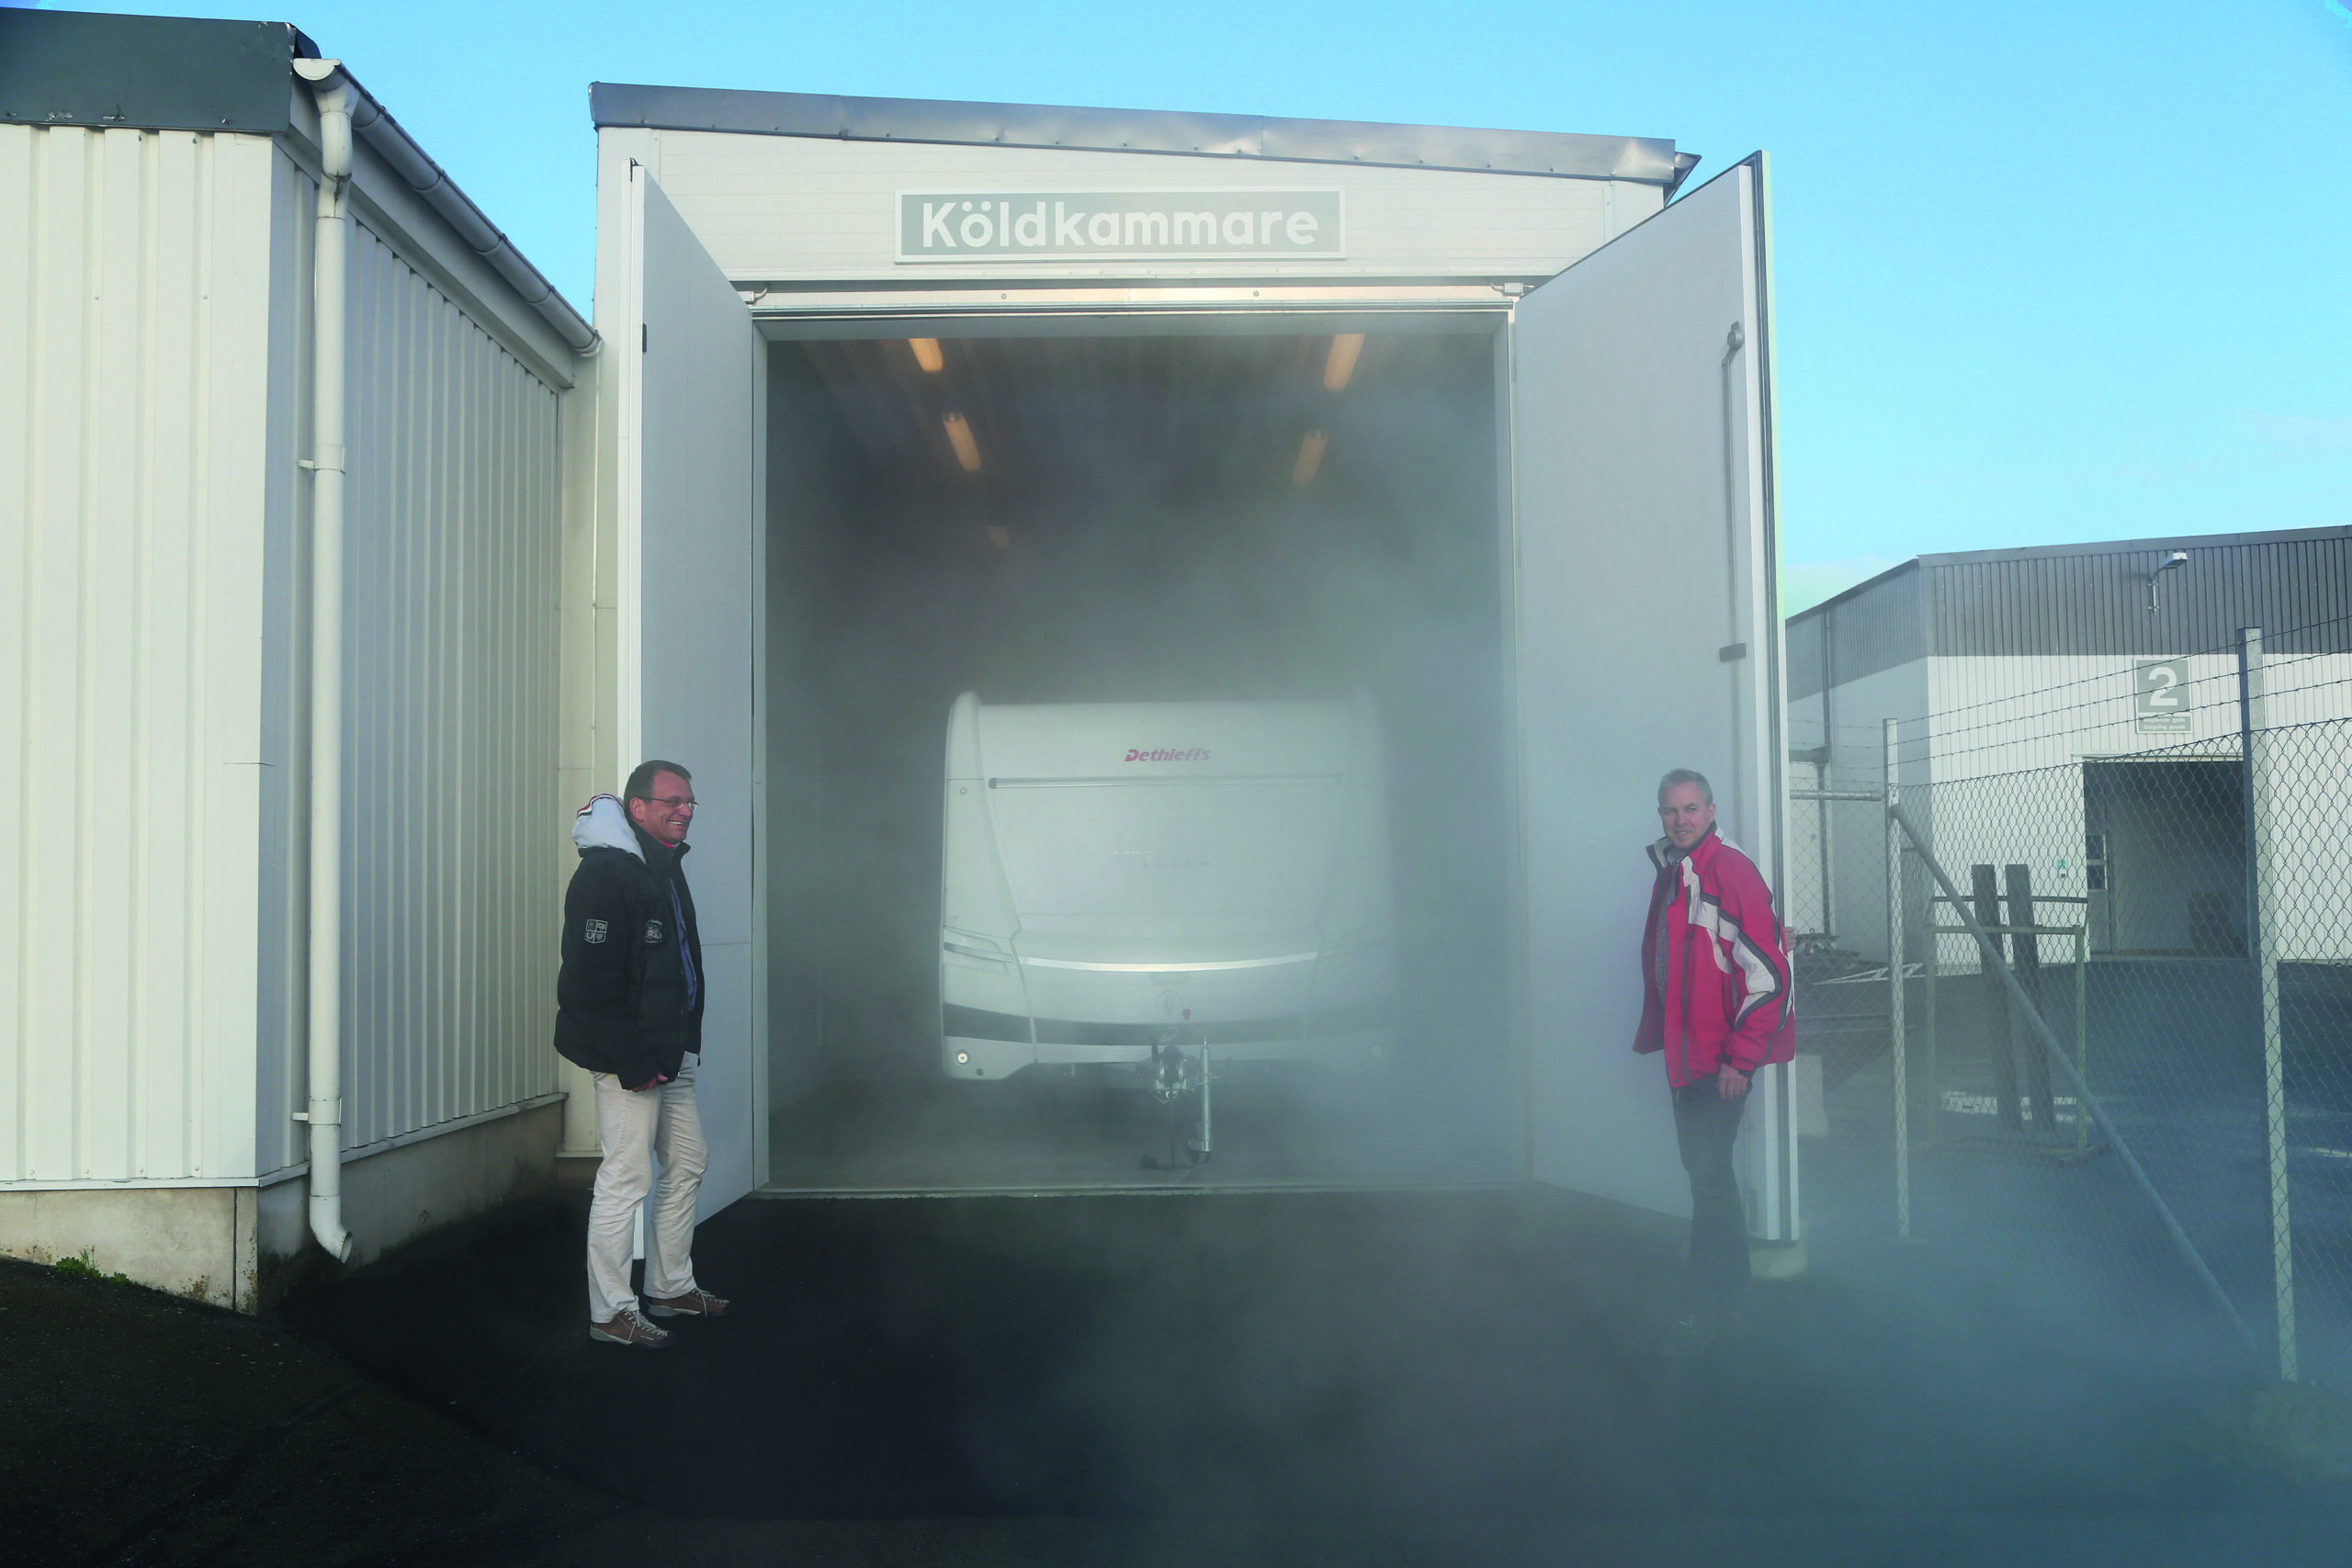 Dethleffs international: Wohnwagen in der Kältekammer in Schweden